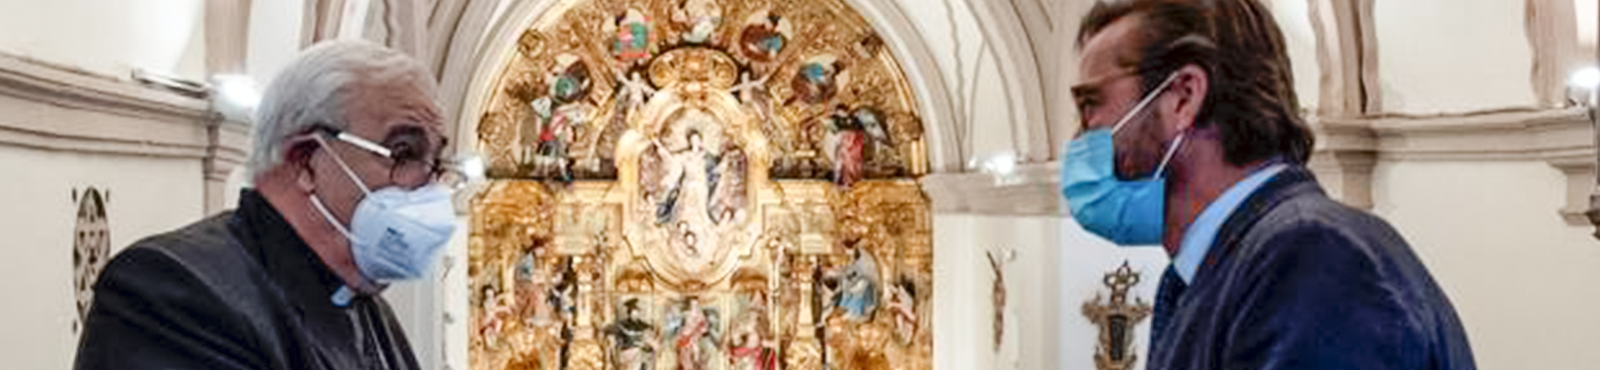 Presentación en público del retablo restaurado de la Abadía